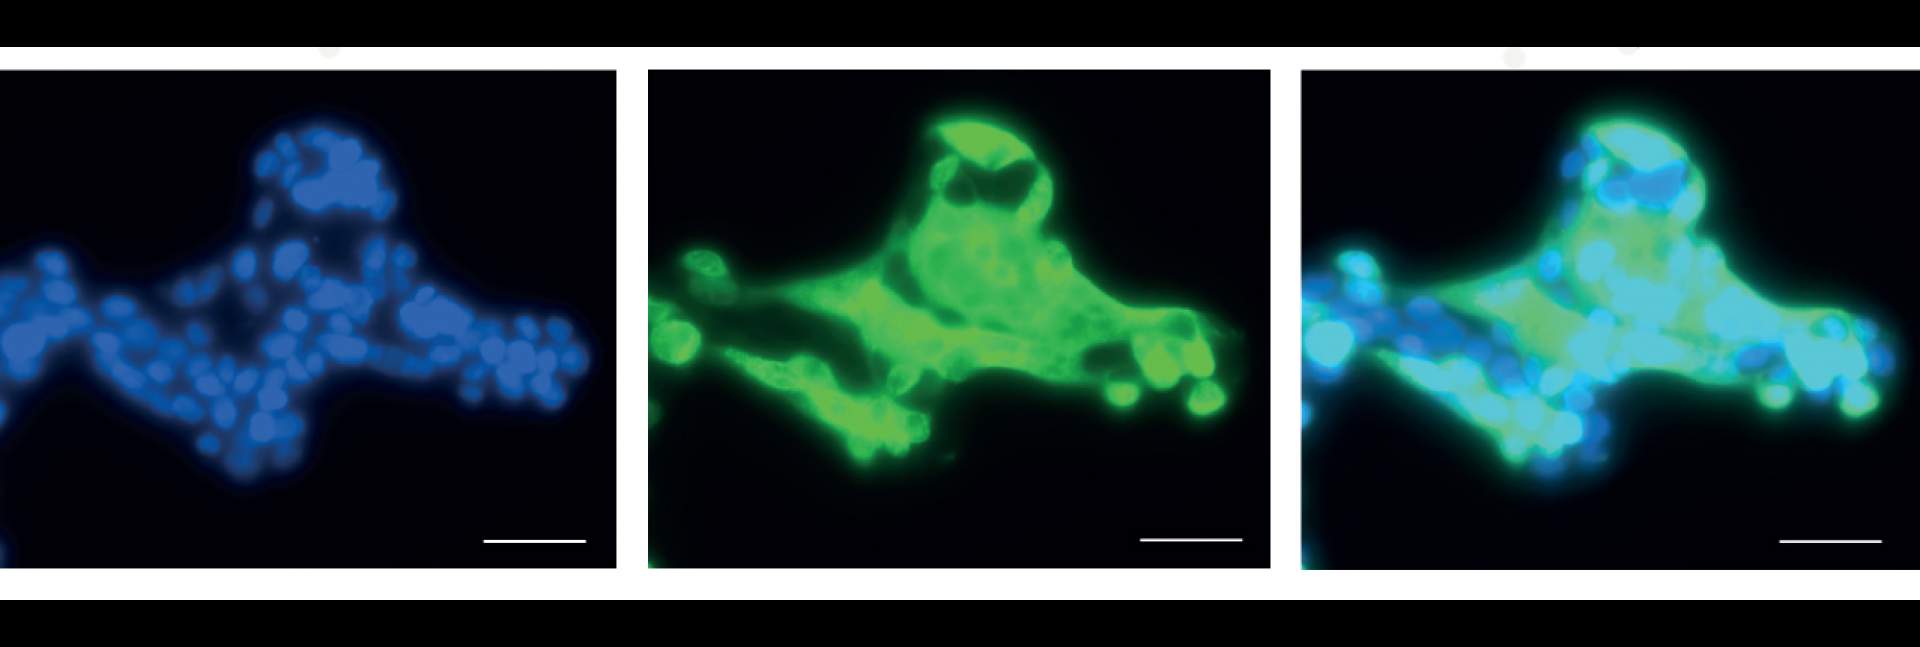 צילום מיקרוסקופי של תאי ריאה אנושיים בתרבית שהודבקו בנגיף הקורונה. מסומנים בכחול (משמאל) - גרעיני התאים, בירוק (במרכז) – הנגיף, בטורקיז (מימין) – התאים שהודבקו בנגיף